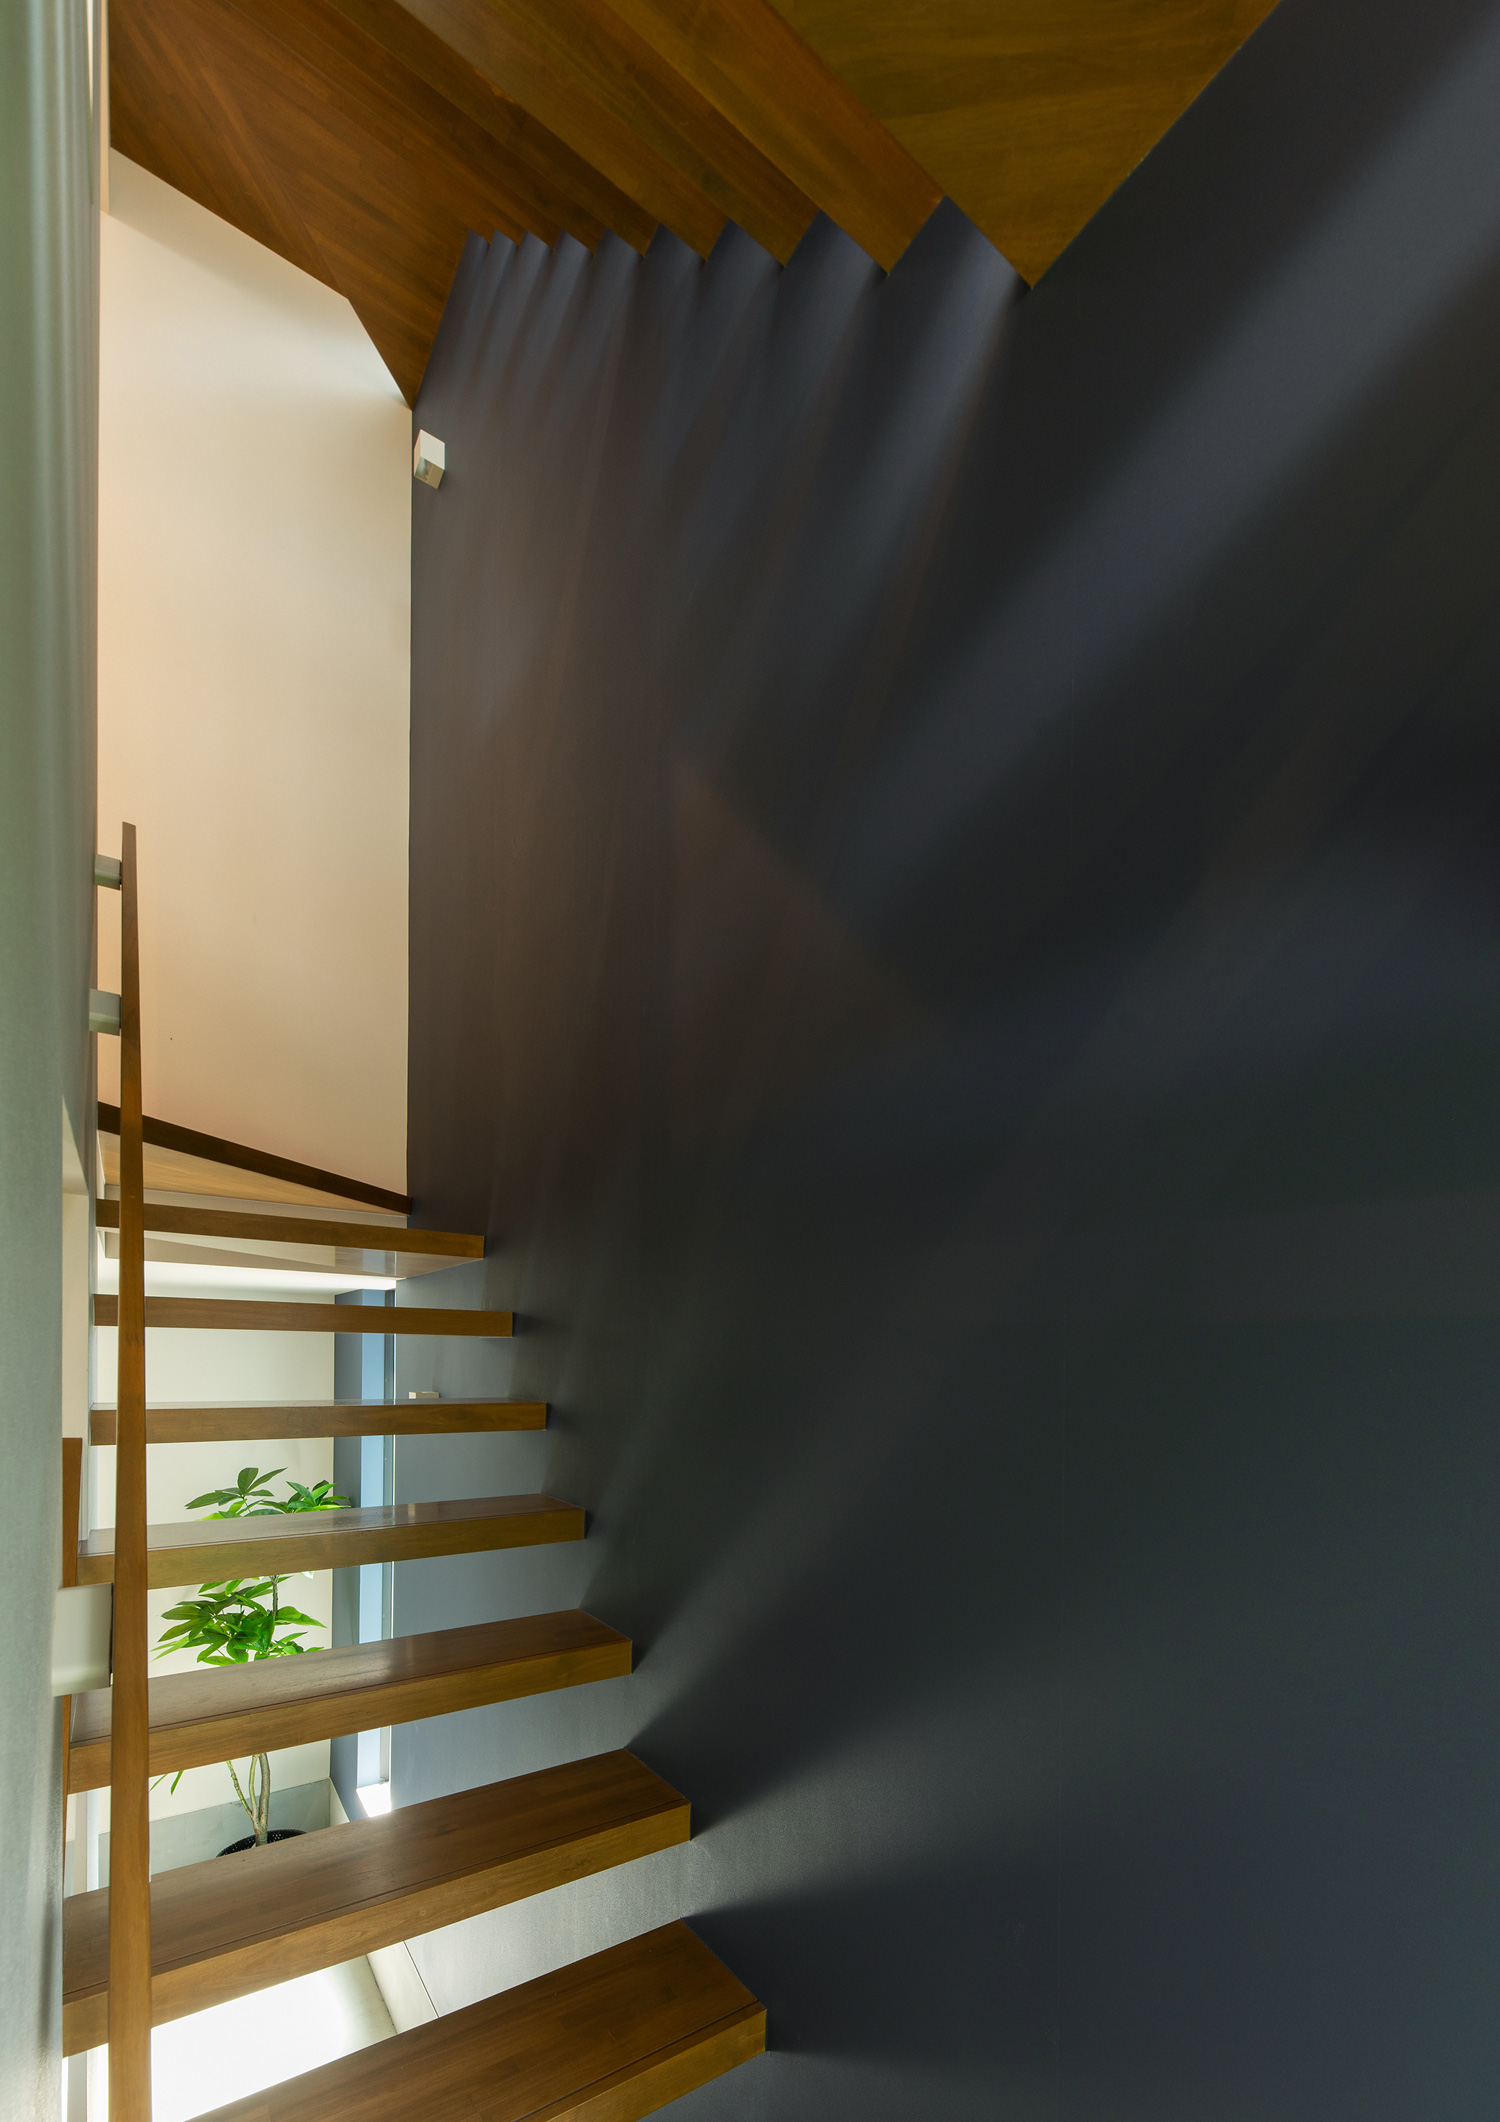 自然光がスケルトン階段の間から抜け、ネイビーの壁に映る様子・デザイン住宅